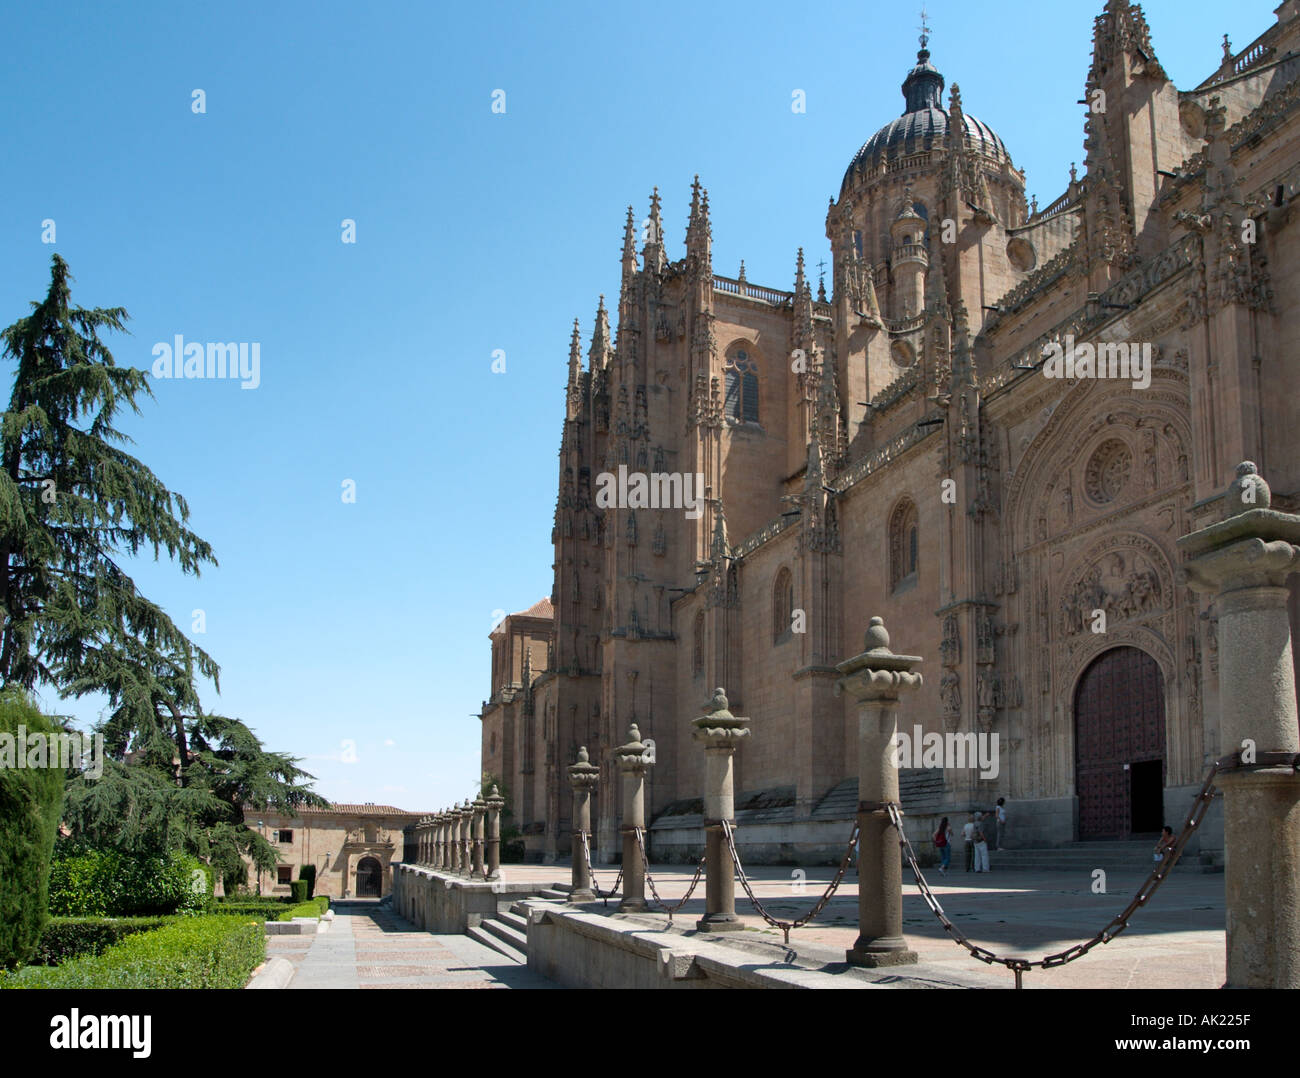 Catedral Nueva (New Cathedral), Plaza Anaya, Salamanca, Castilla y Leon, Spain Stock Photo